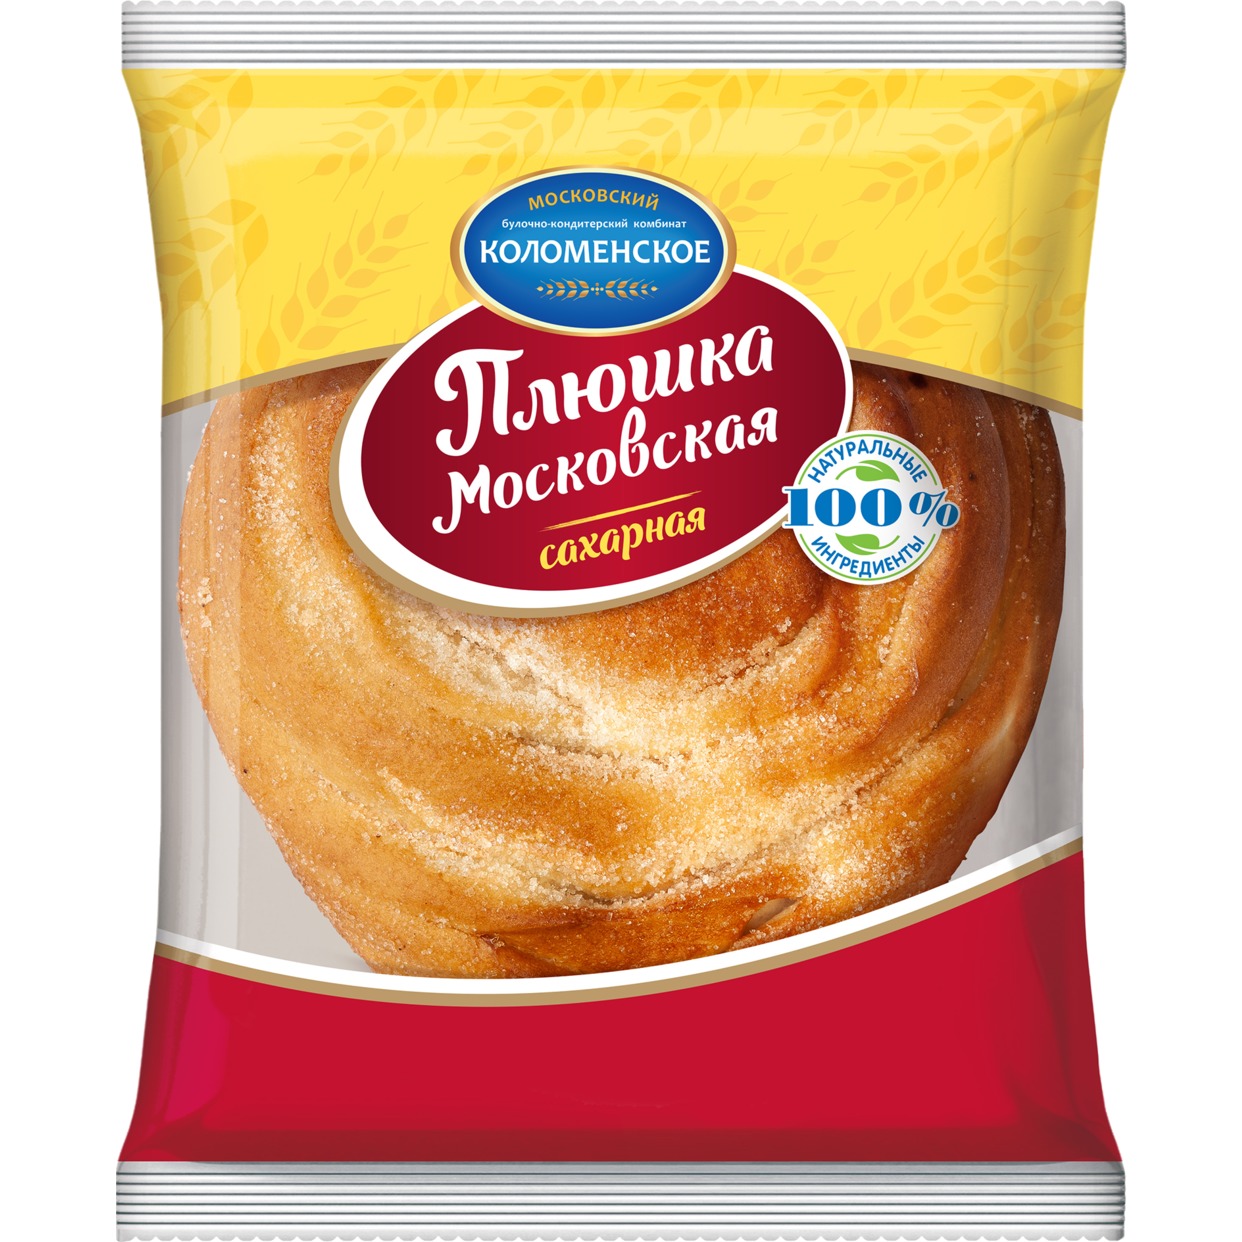 Изделие хлебобулочное сдобное: Плюшка Московская сахарная 150 гр Коломенское